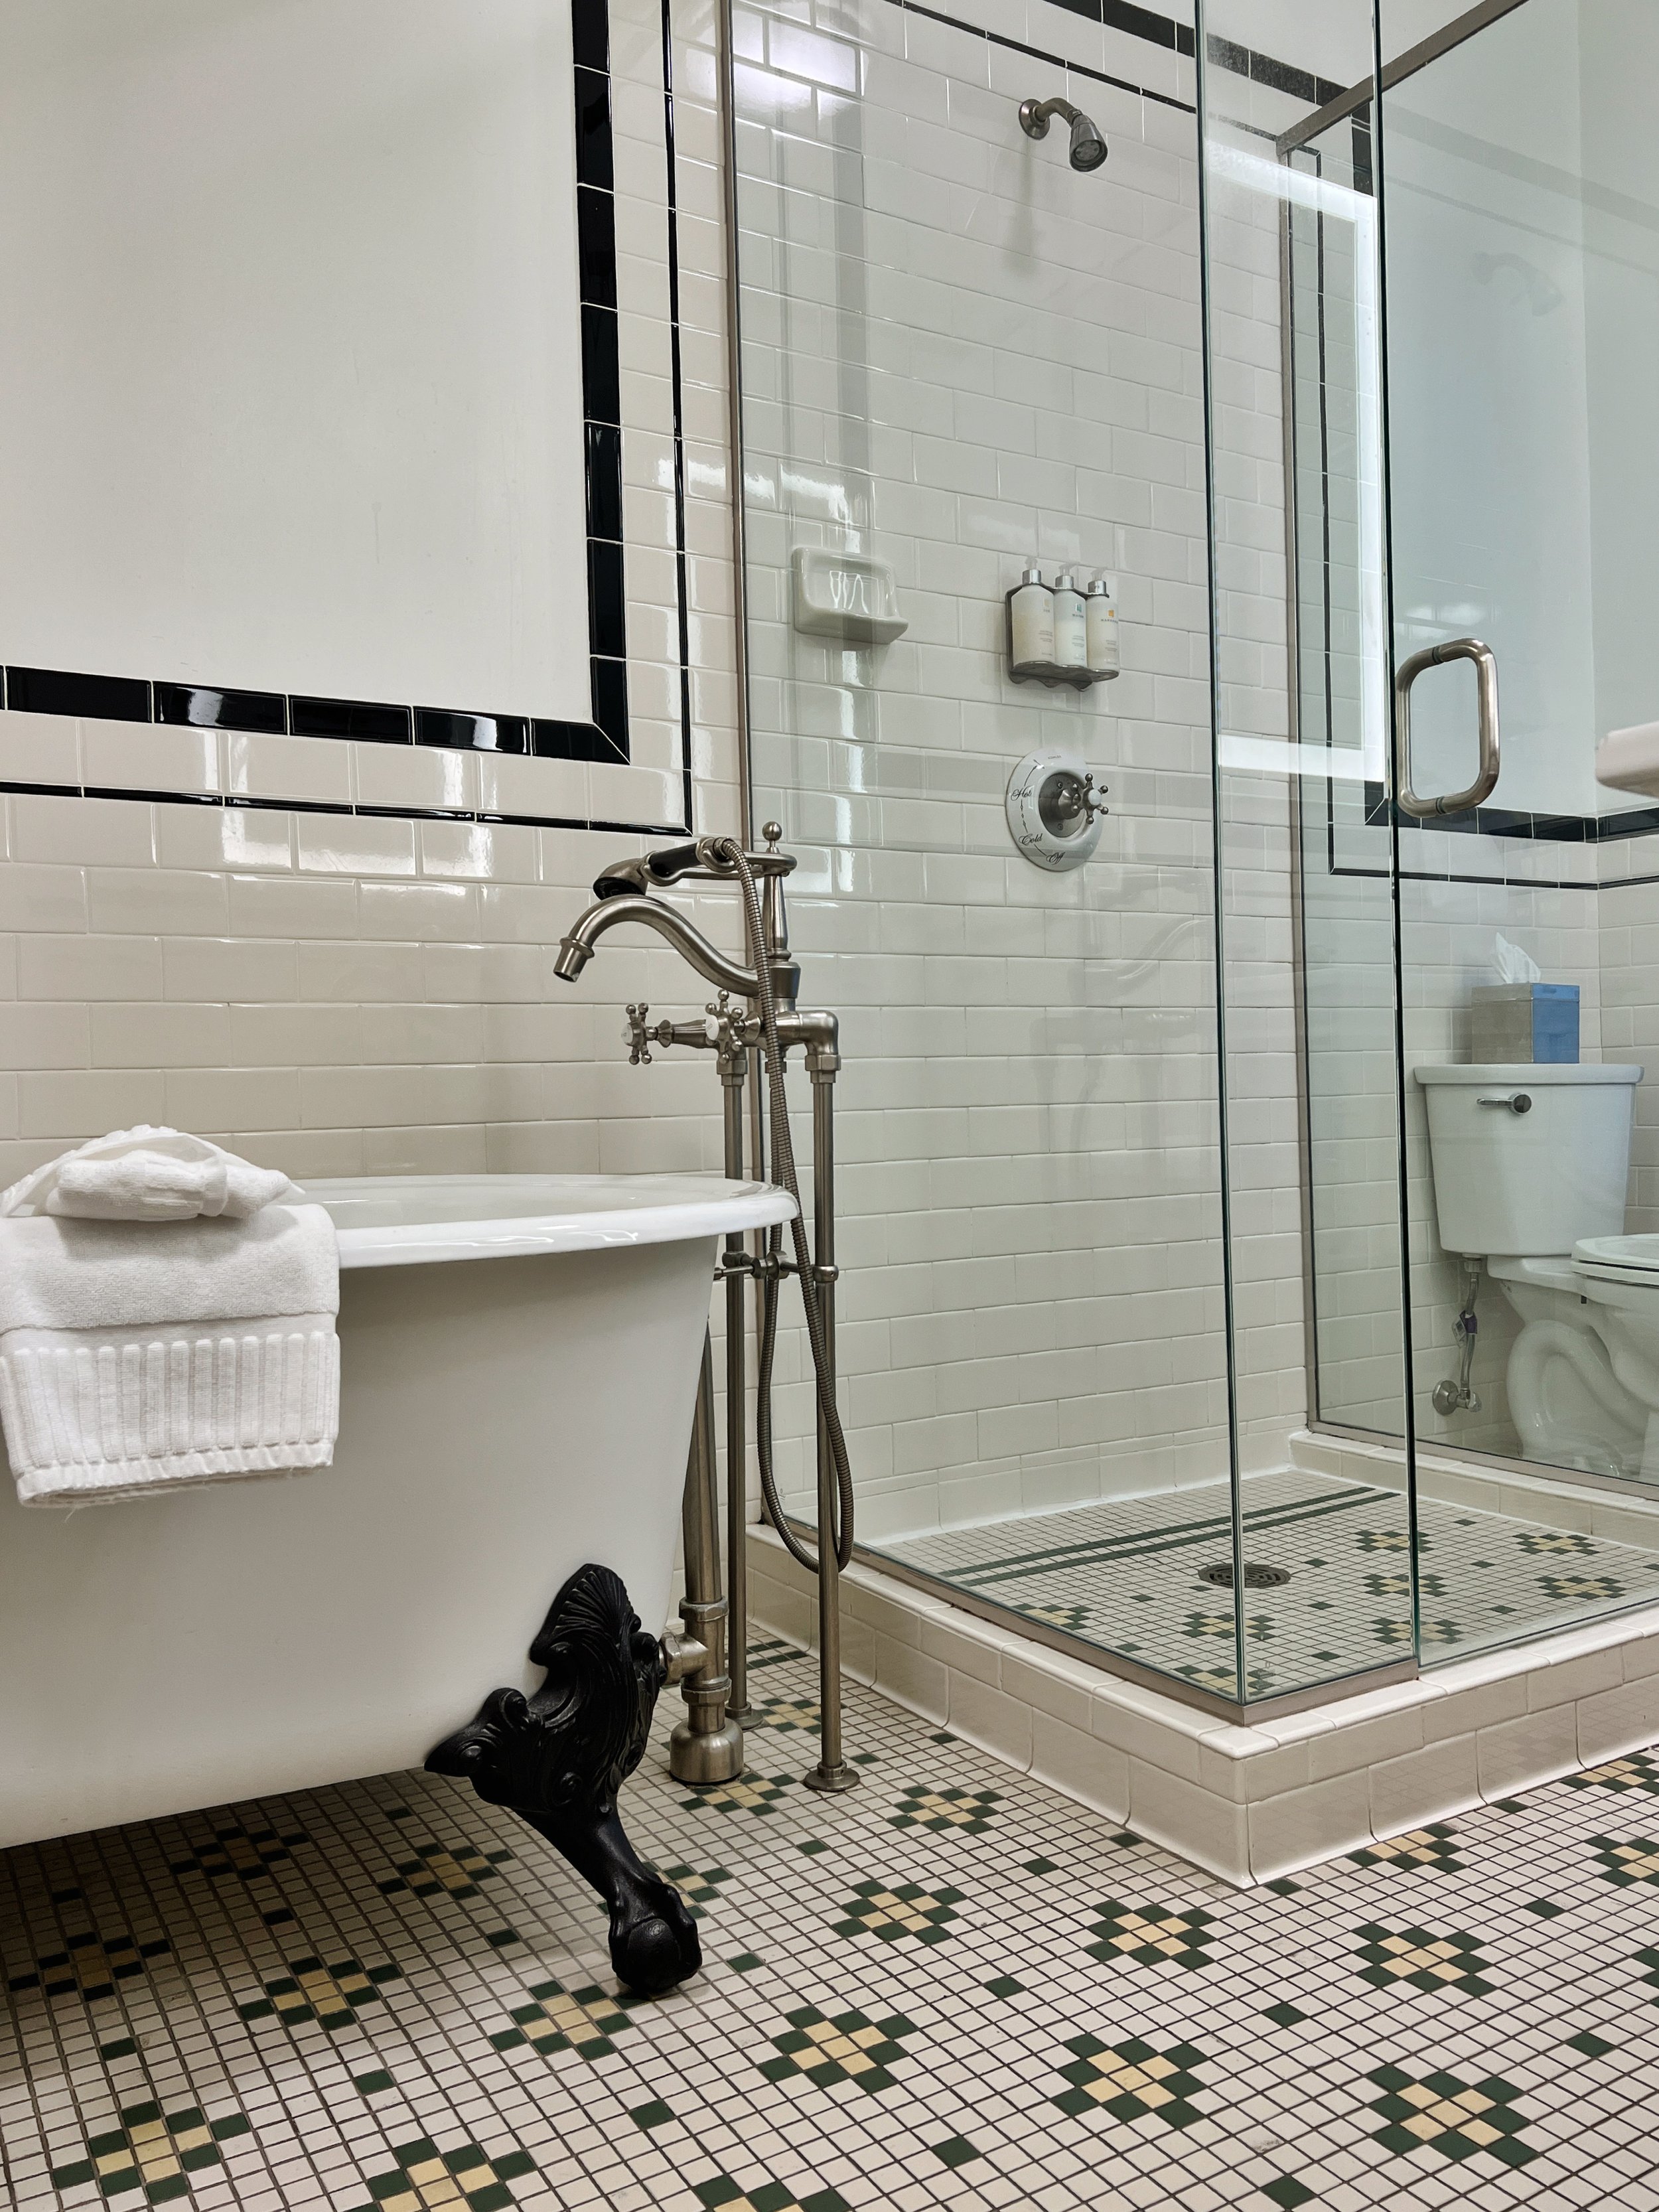 Oxford hotel bathroom clawfoot tub and shower